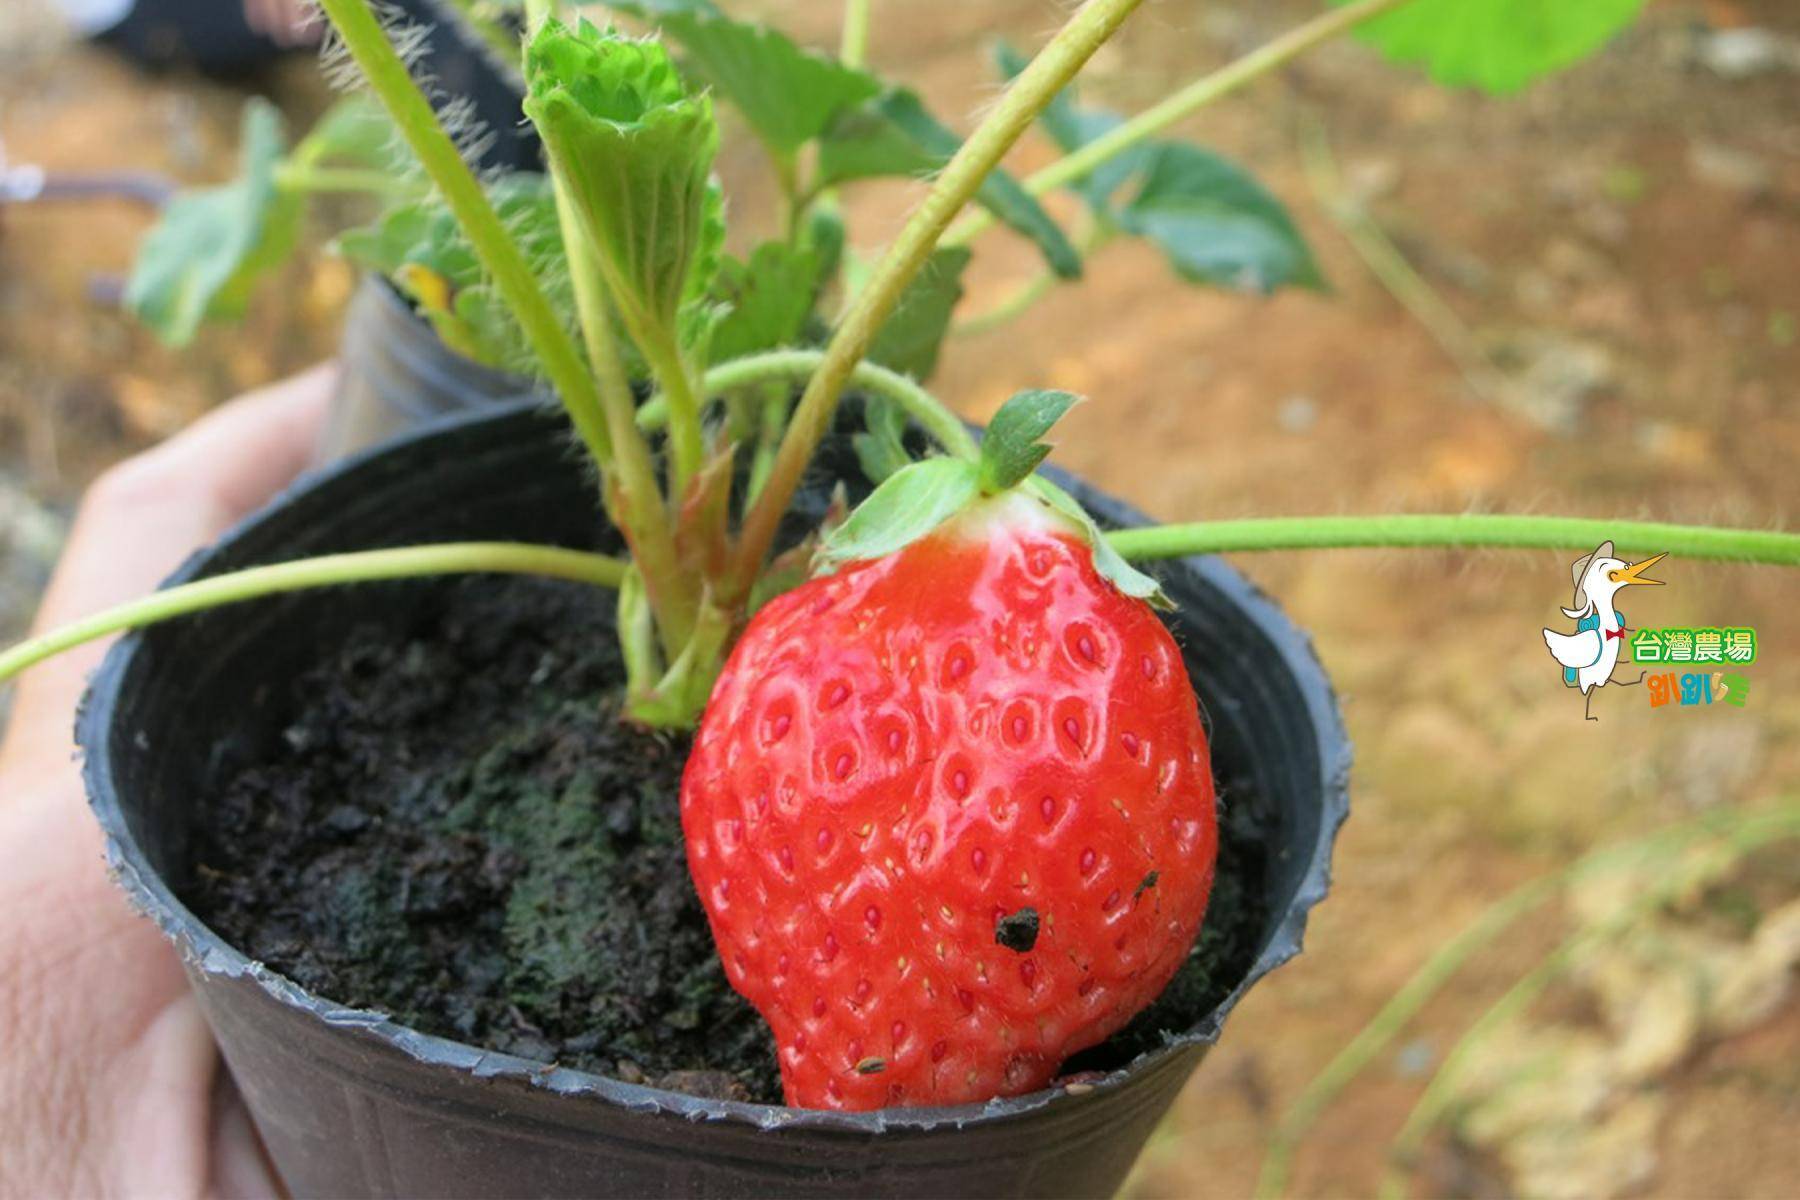 南投-台一生態休閒農場-採果(蕃茄、百香果、草莓)體驗券17